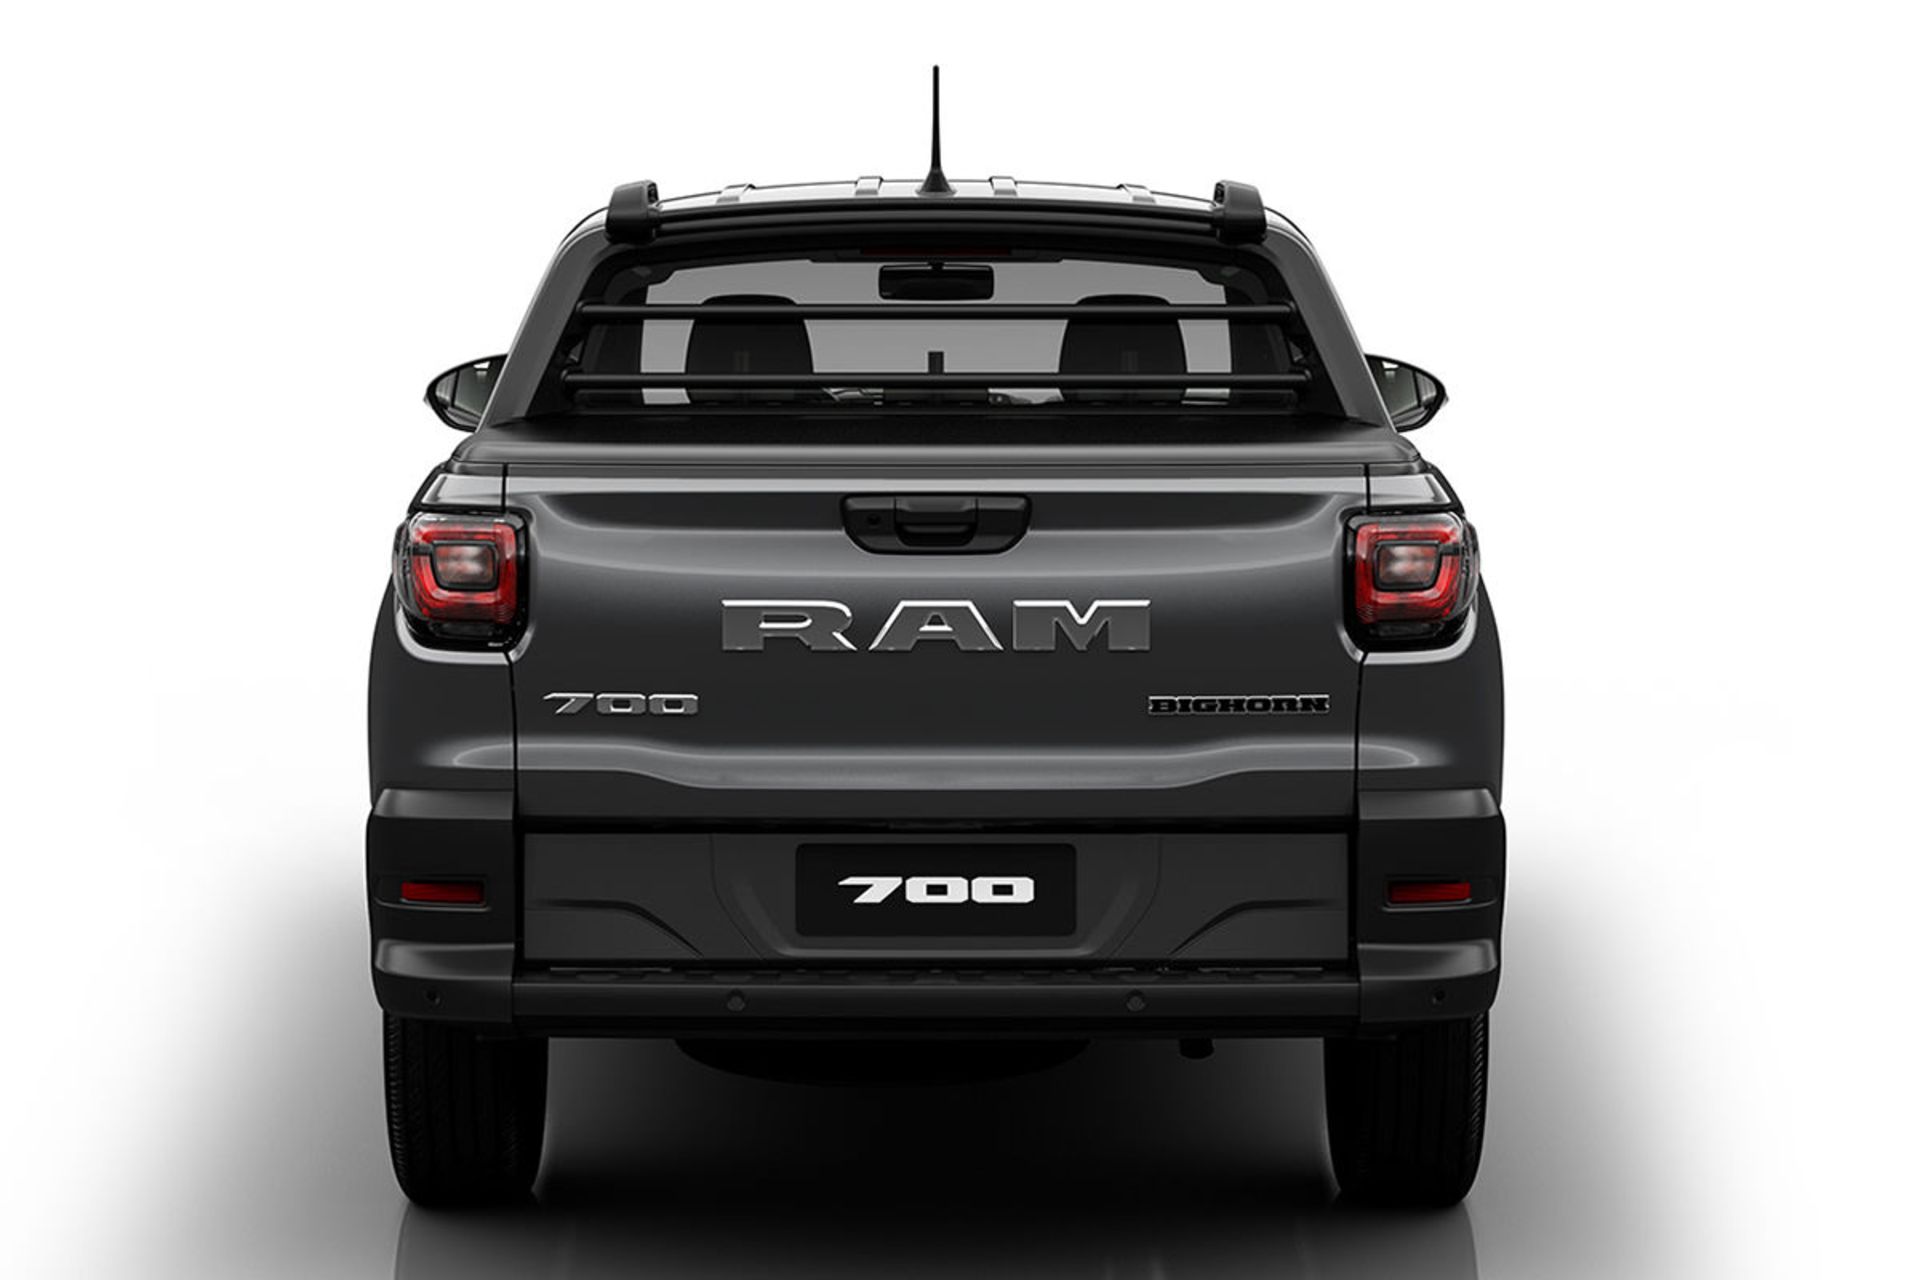 نمای عقب وانت پیکاپ رم 700 / 2021 Ram 700 pickup مبتنی بر فیات استرادا